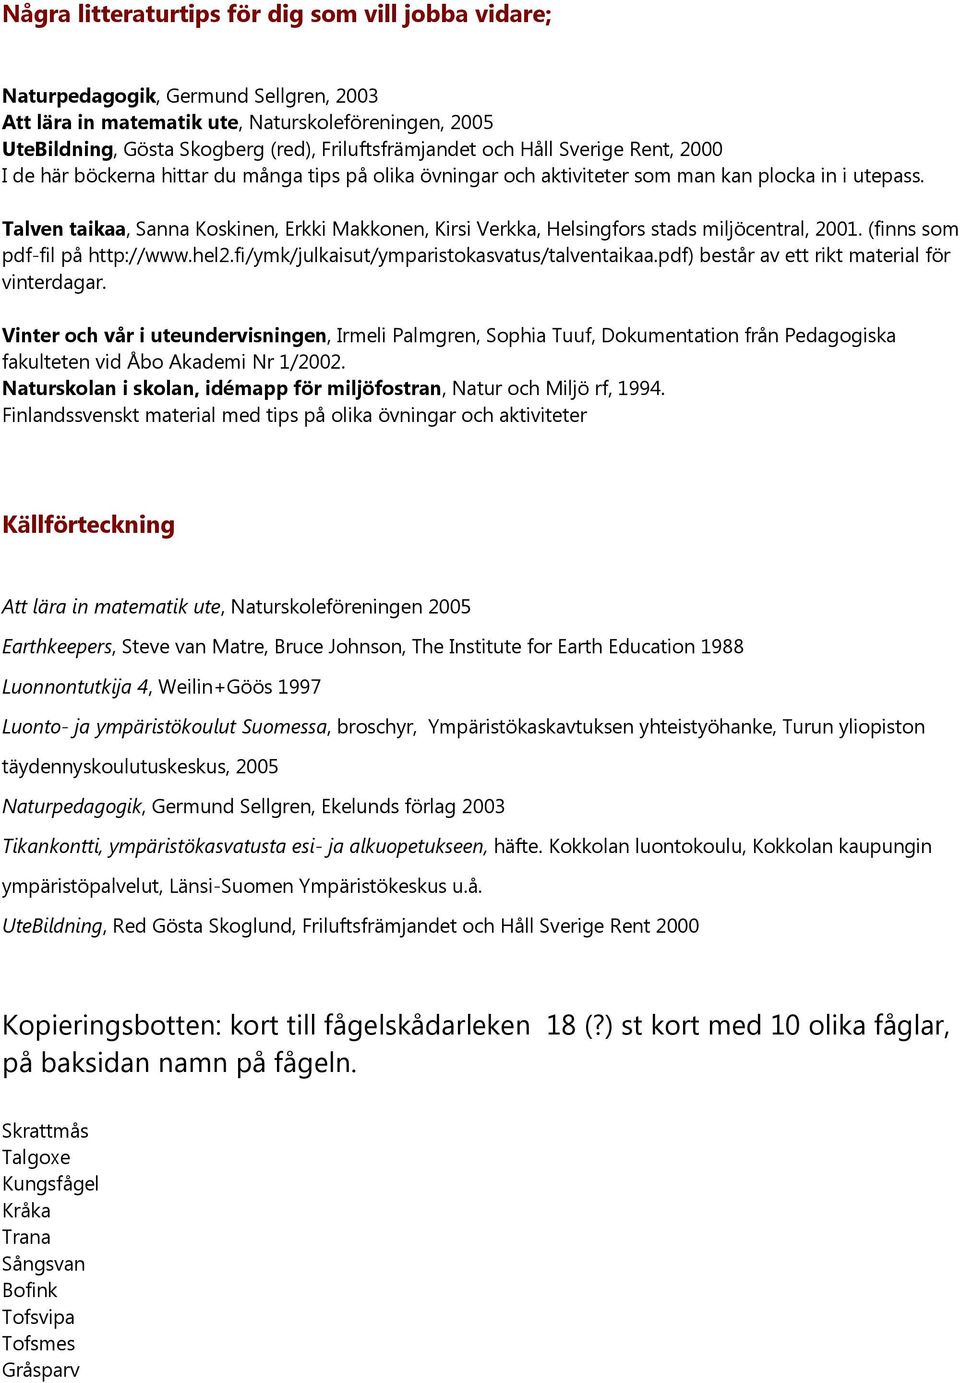 Talven taikaa, Sanna Koskinen, Erkki Makkonen, Kirsi Verkka, Helsingfors stads miljöcentral, 2001. (finns som pdf-fil på http://www.hel2.fi/ymk/julkaisut/ymparistokasvatus/talventaikaa.